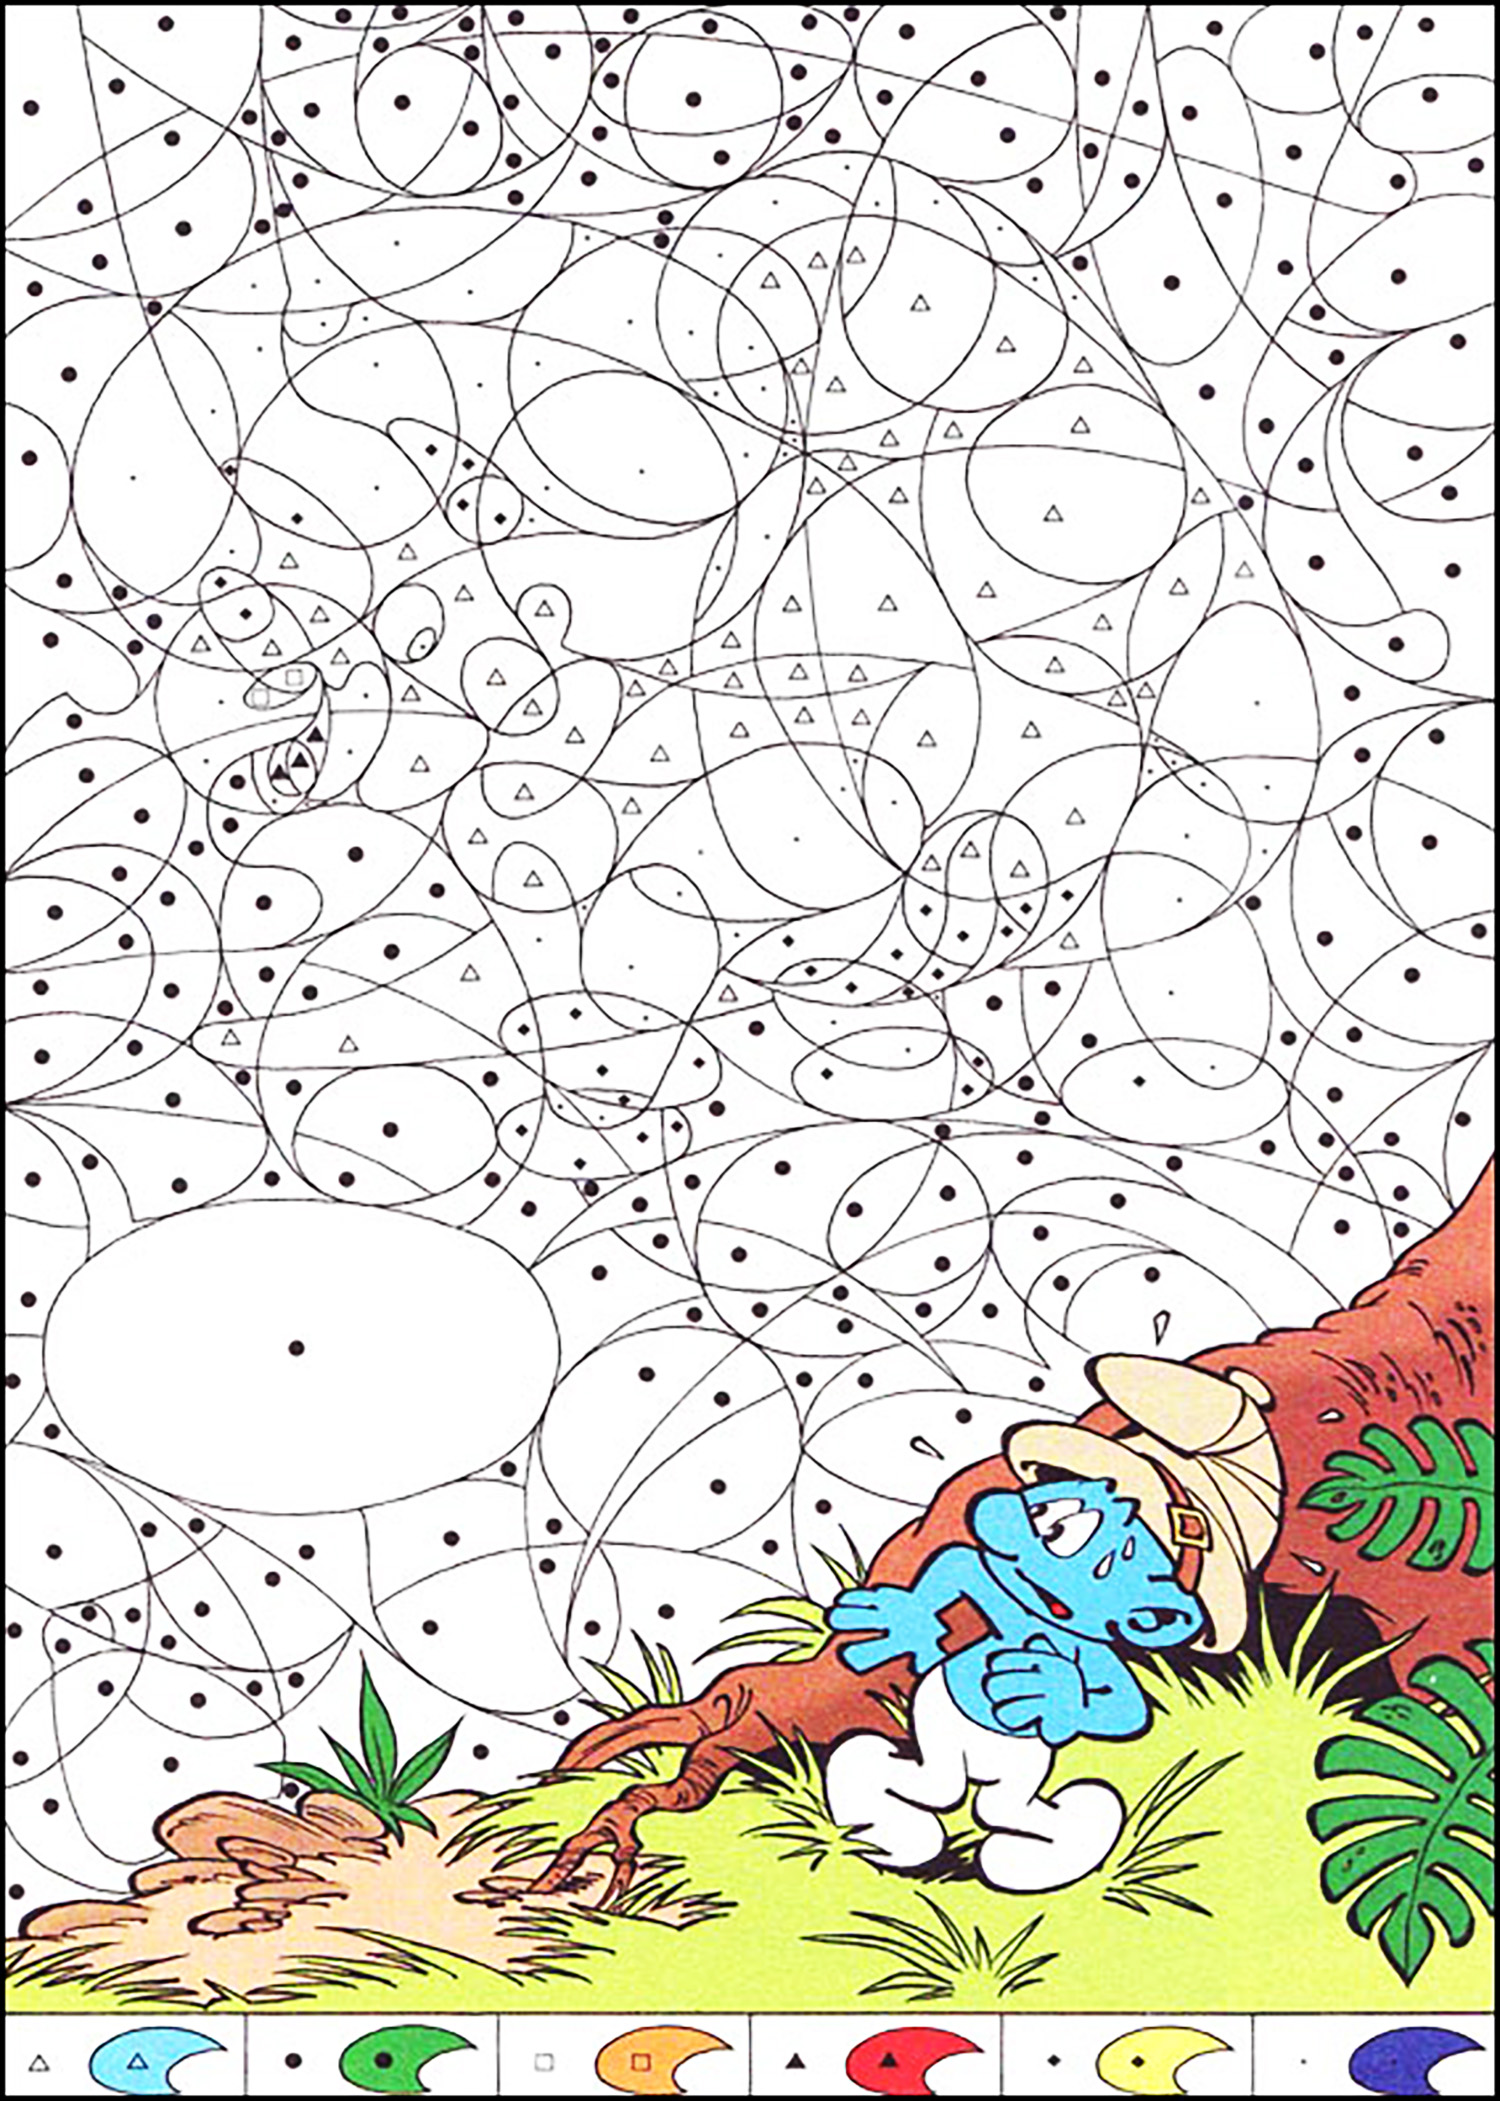 Pagina magica da colorare per bambini con i puffi